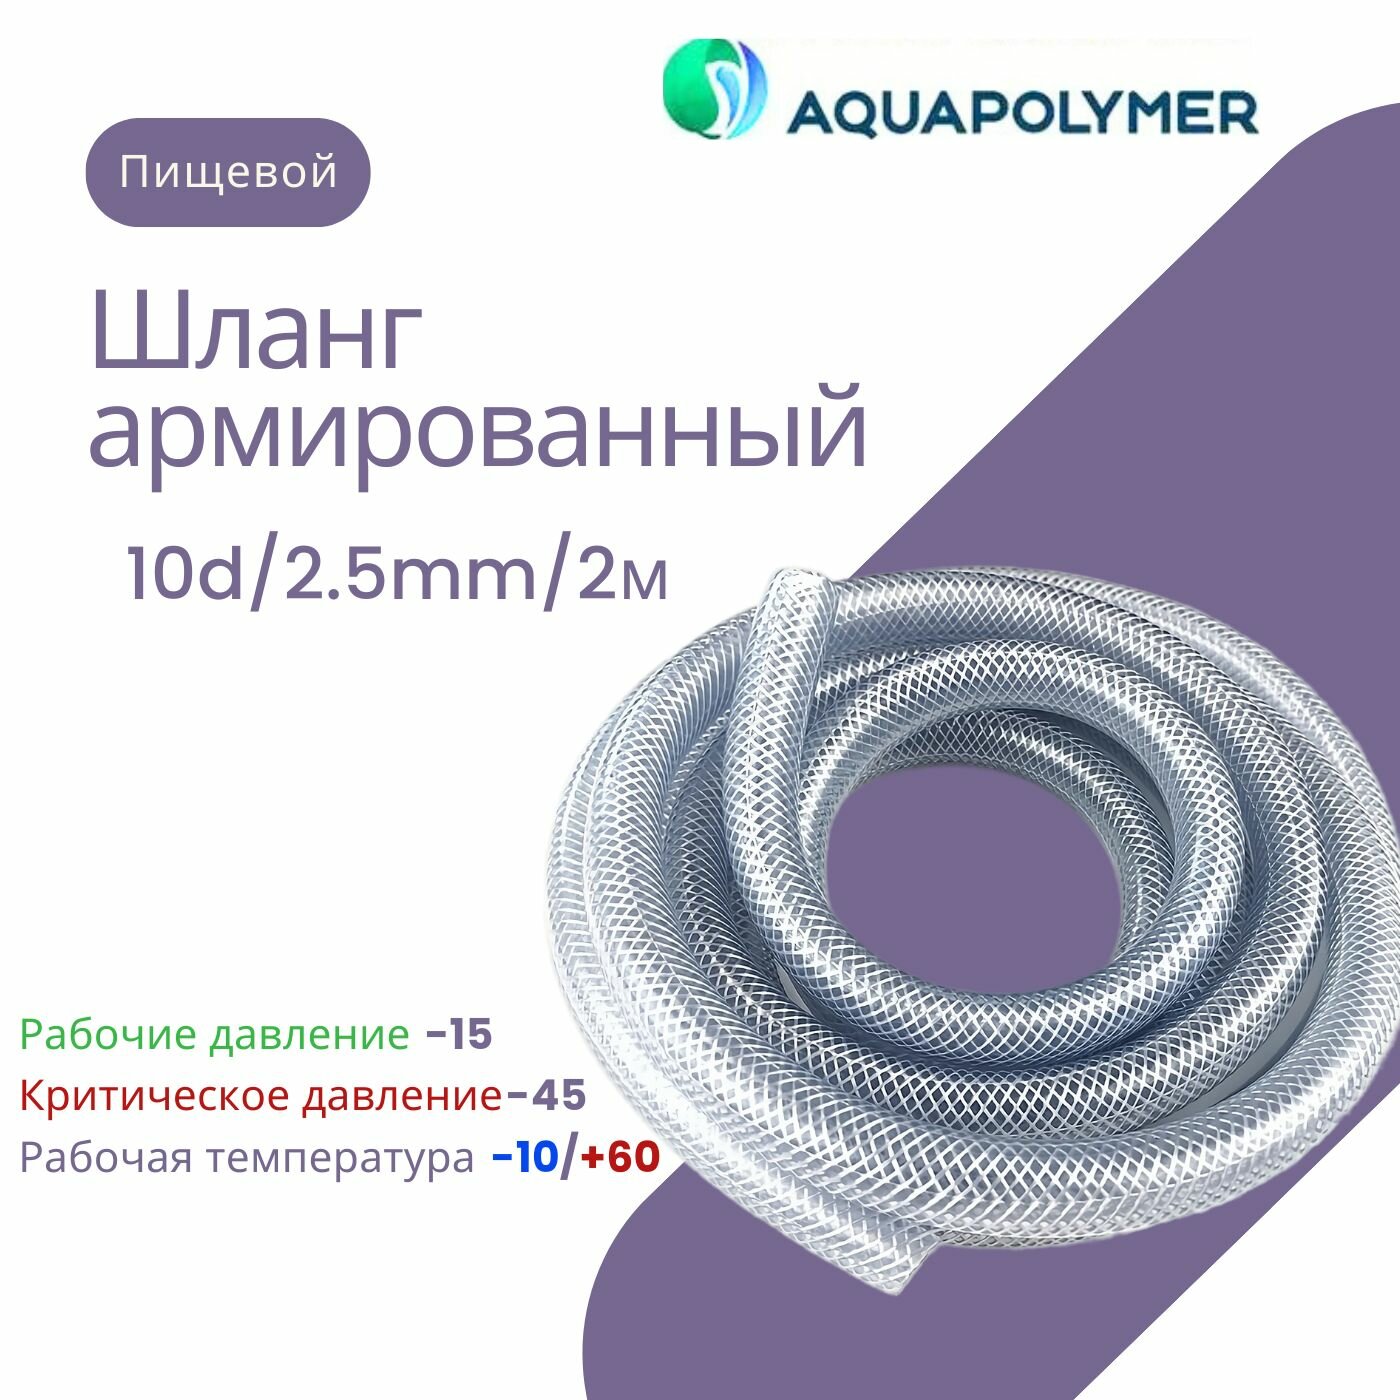 Шланг армированный пищевой прозрачный - Aquapolymer 10d/2.5mm/2m - фотография № 1